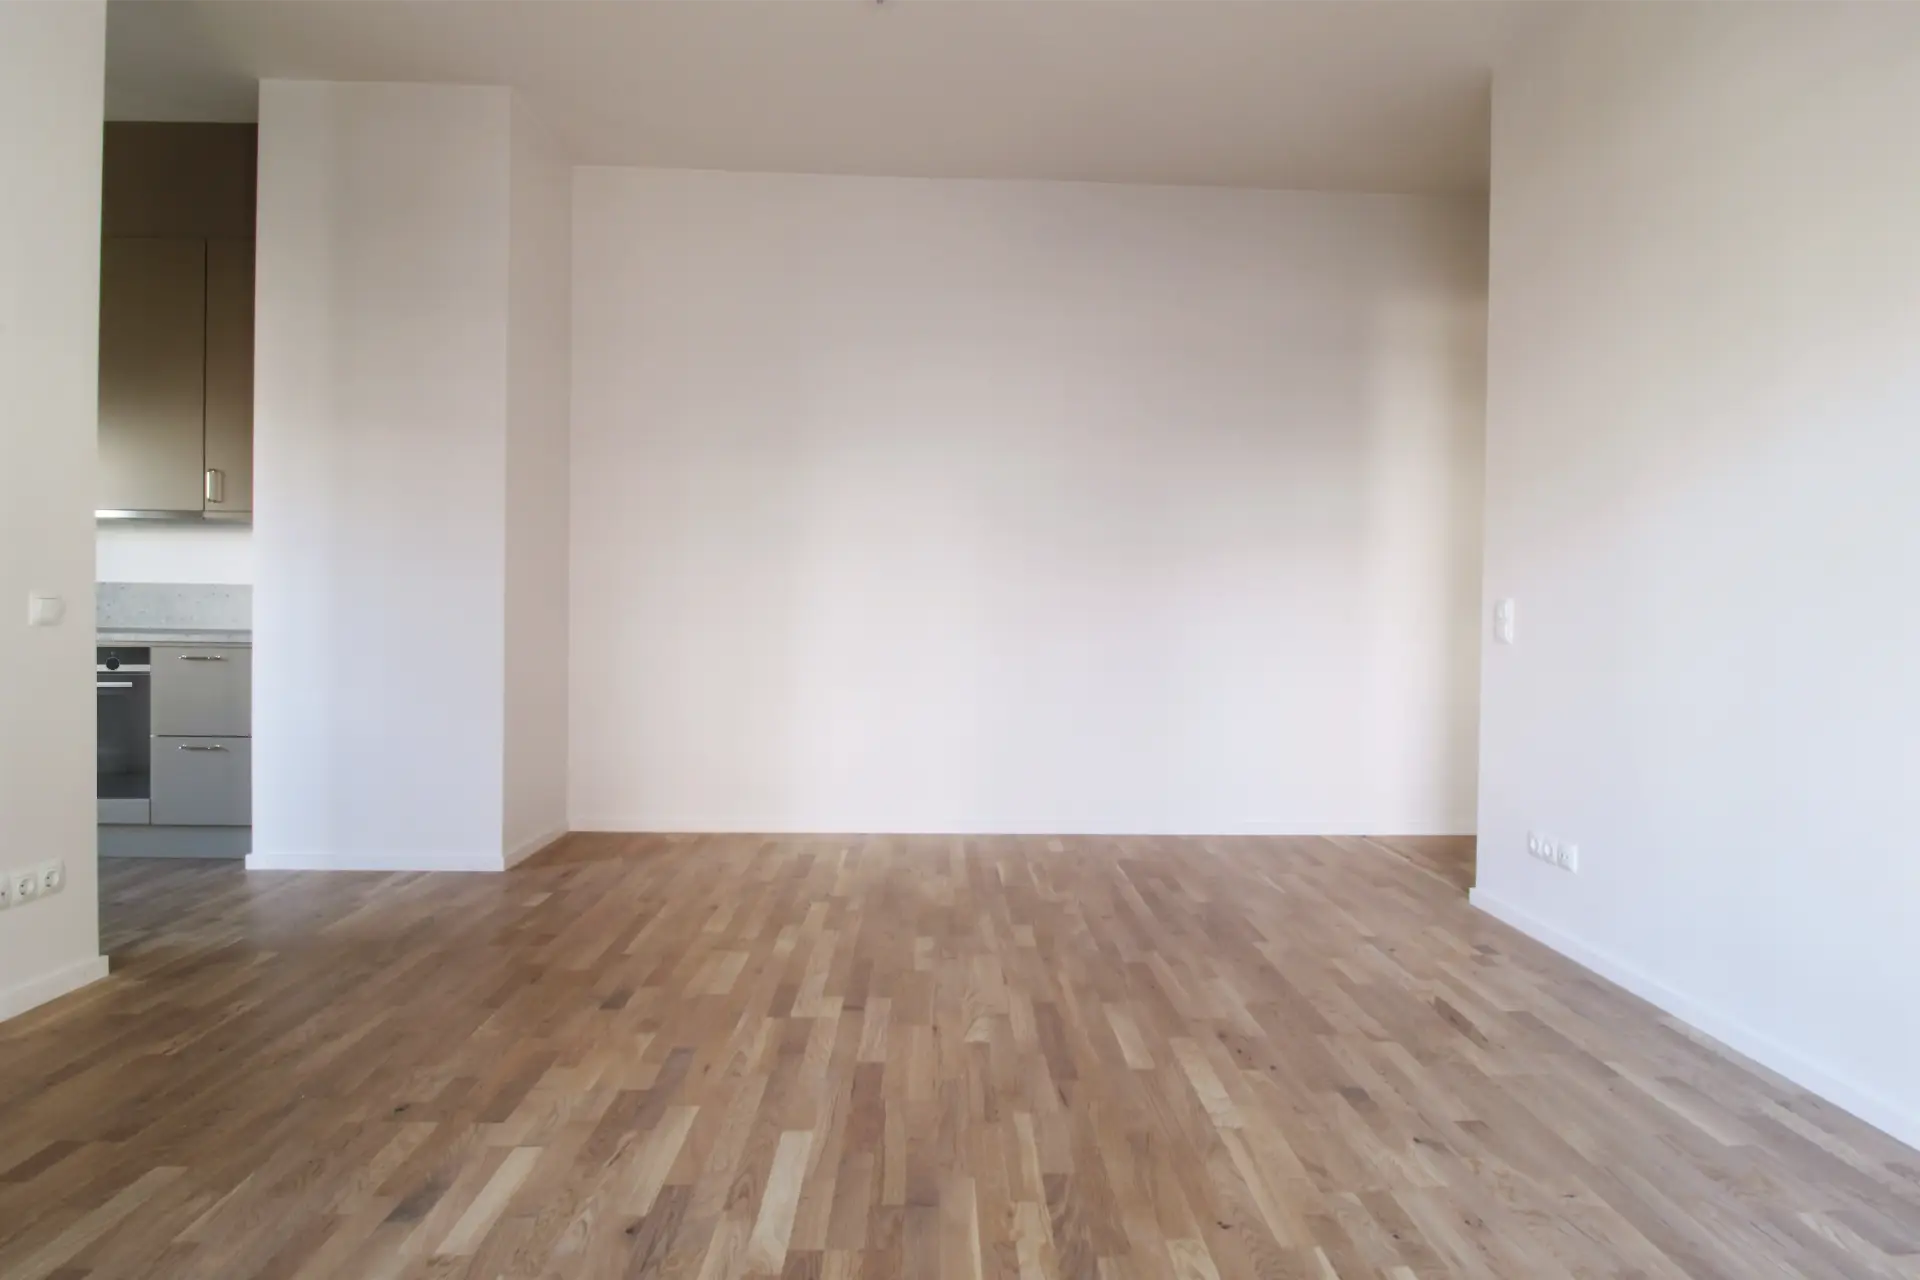 Ett ljust, tomt rum med parkettgolv och vita väggar. En del av ett kök med ett beige skåp syns till vänster.